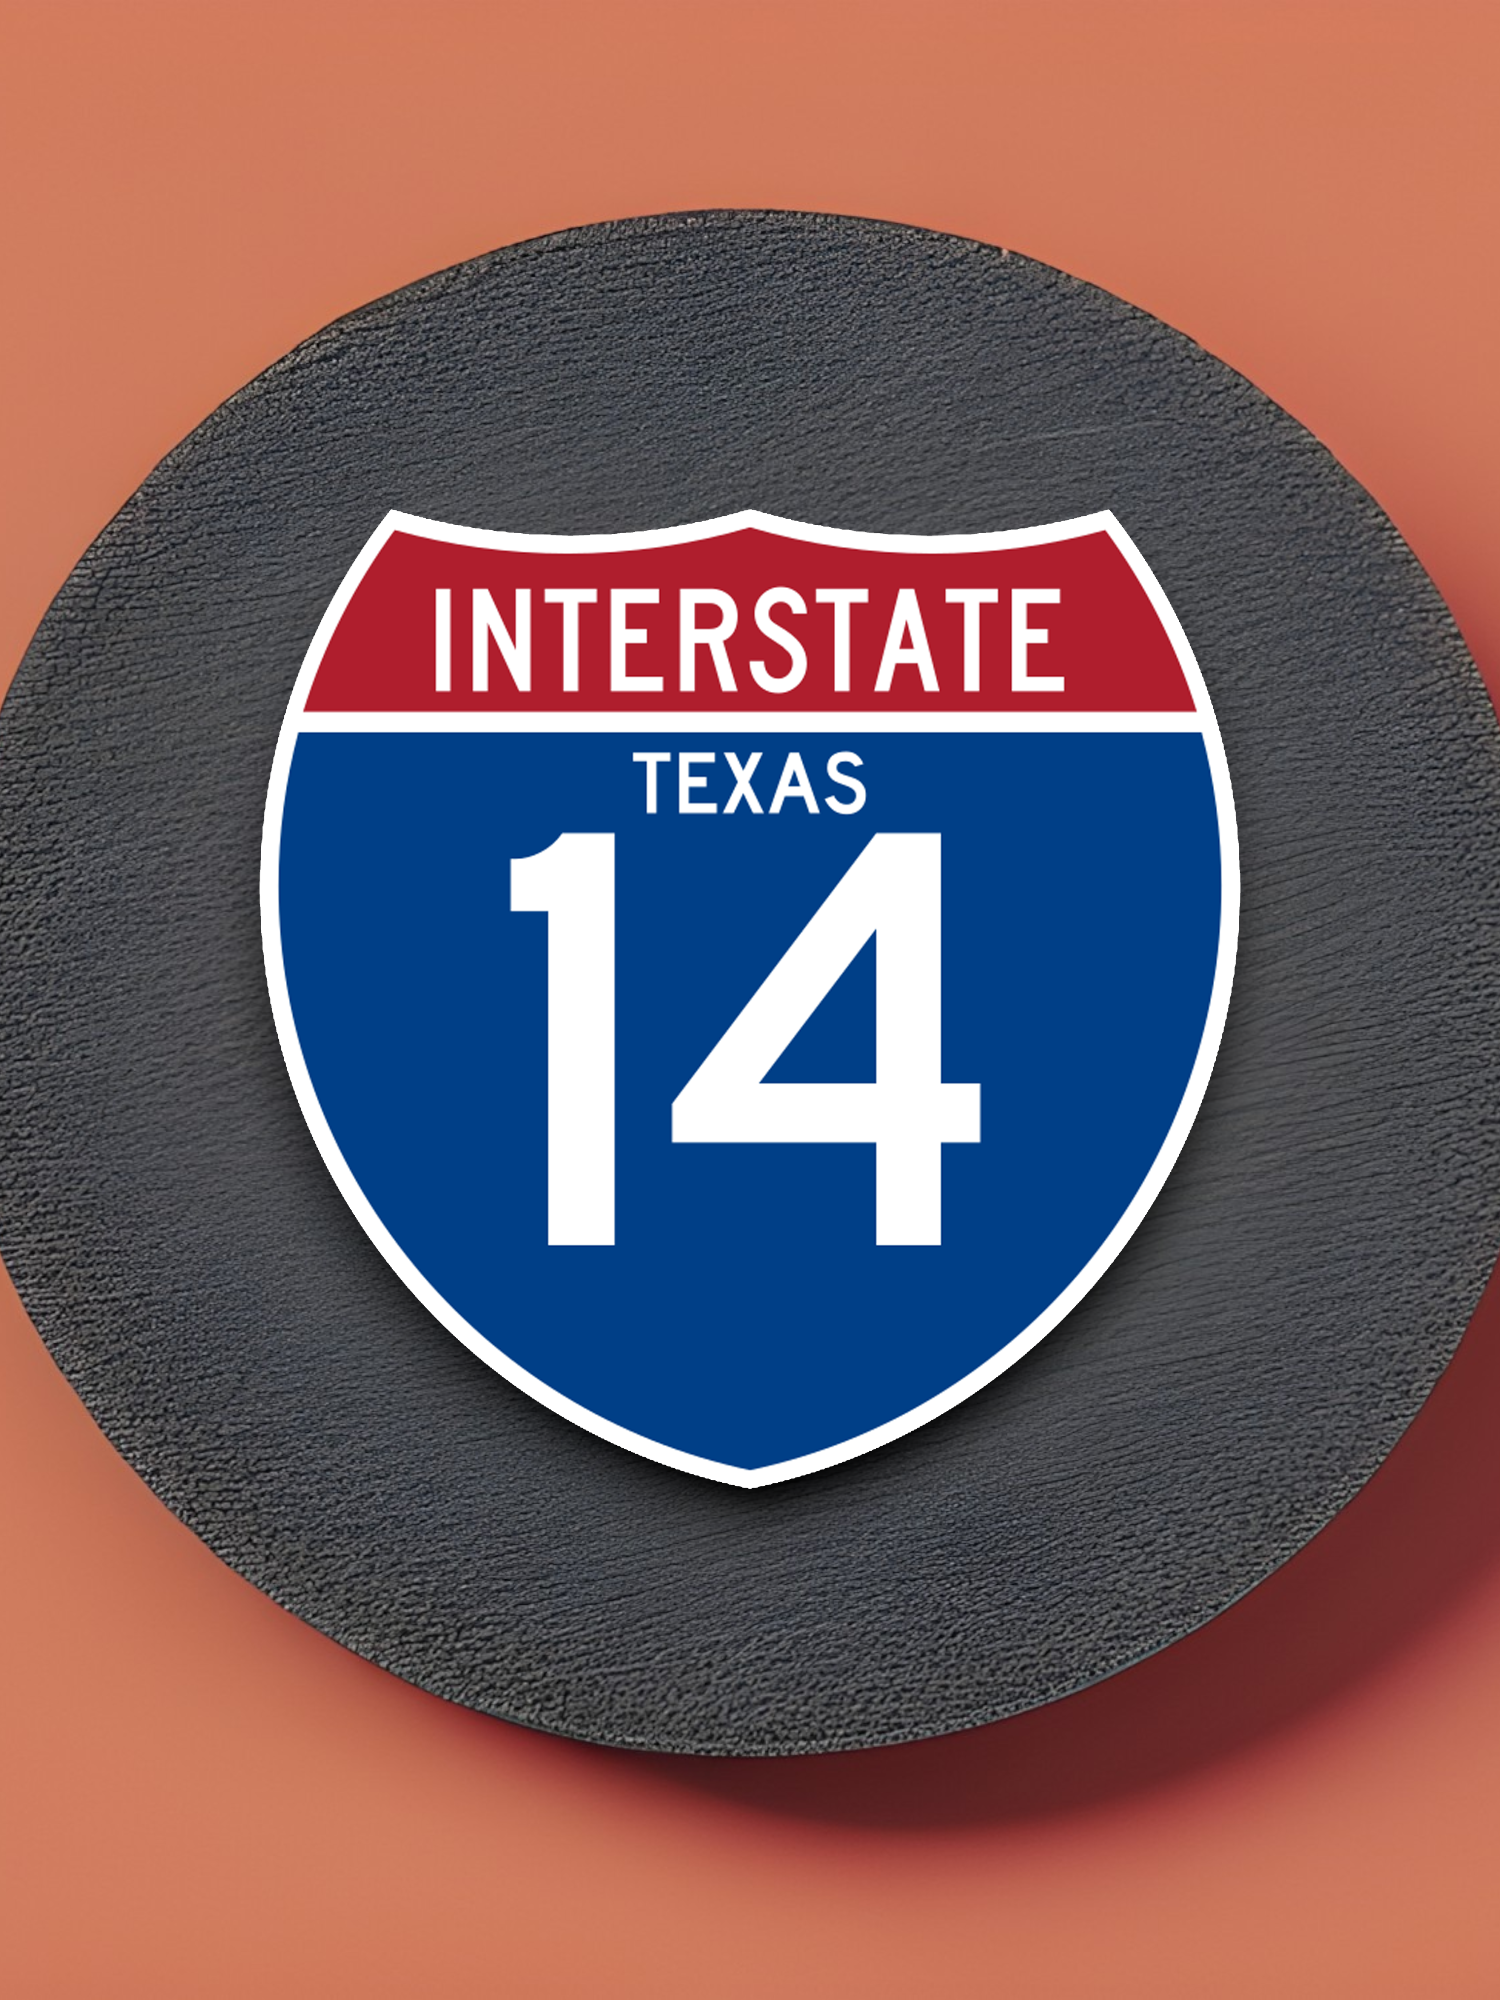 Interstate I-14 - Texas Sticker